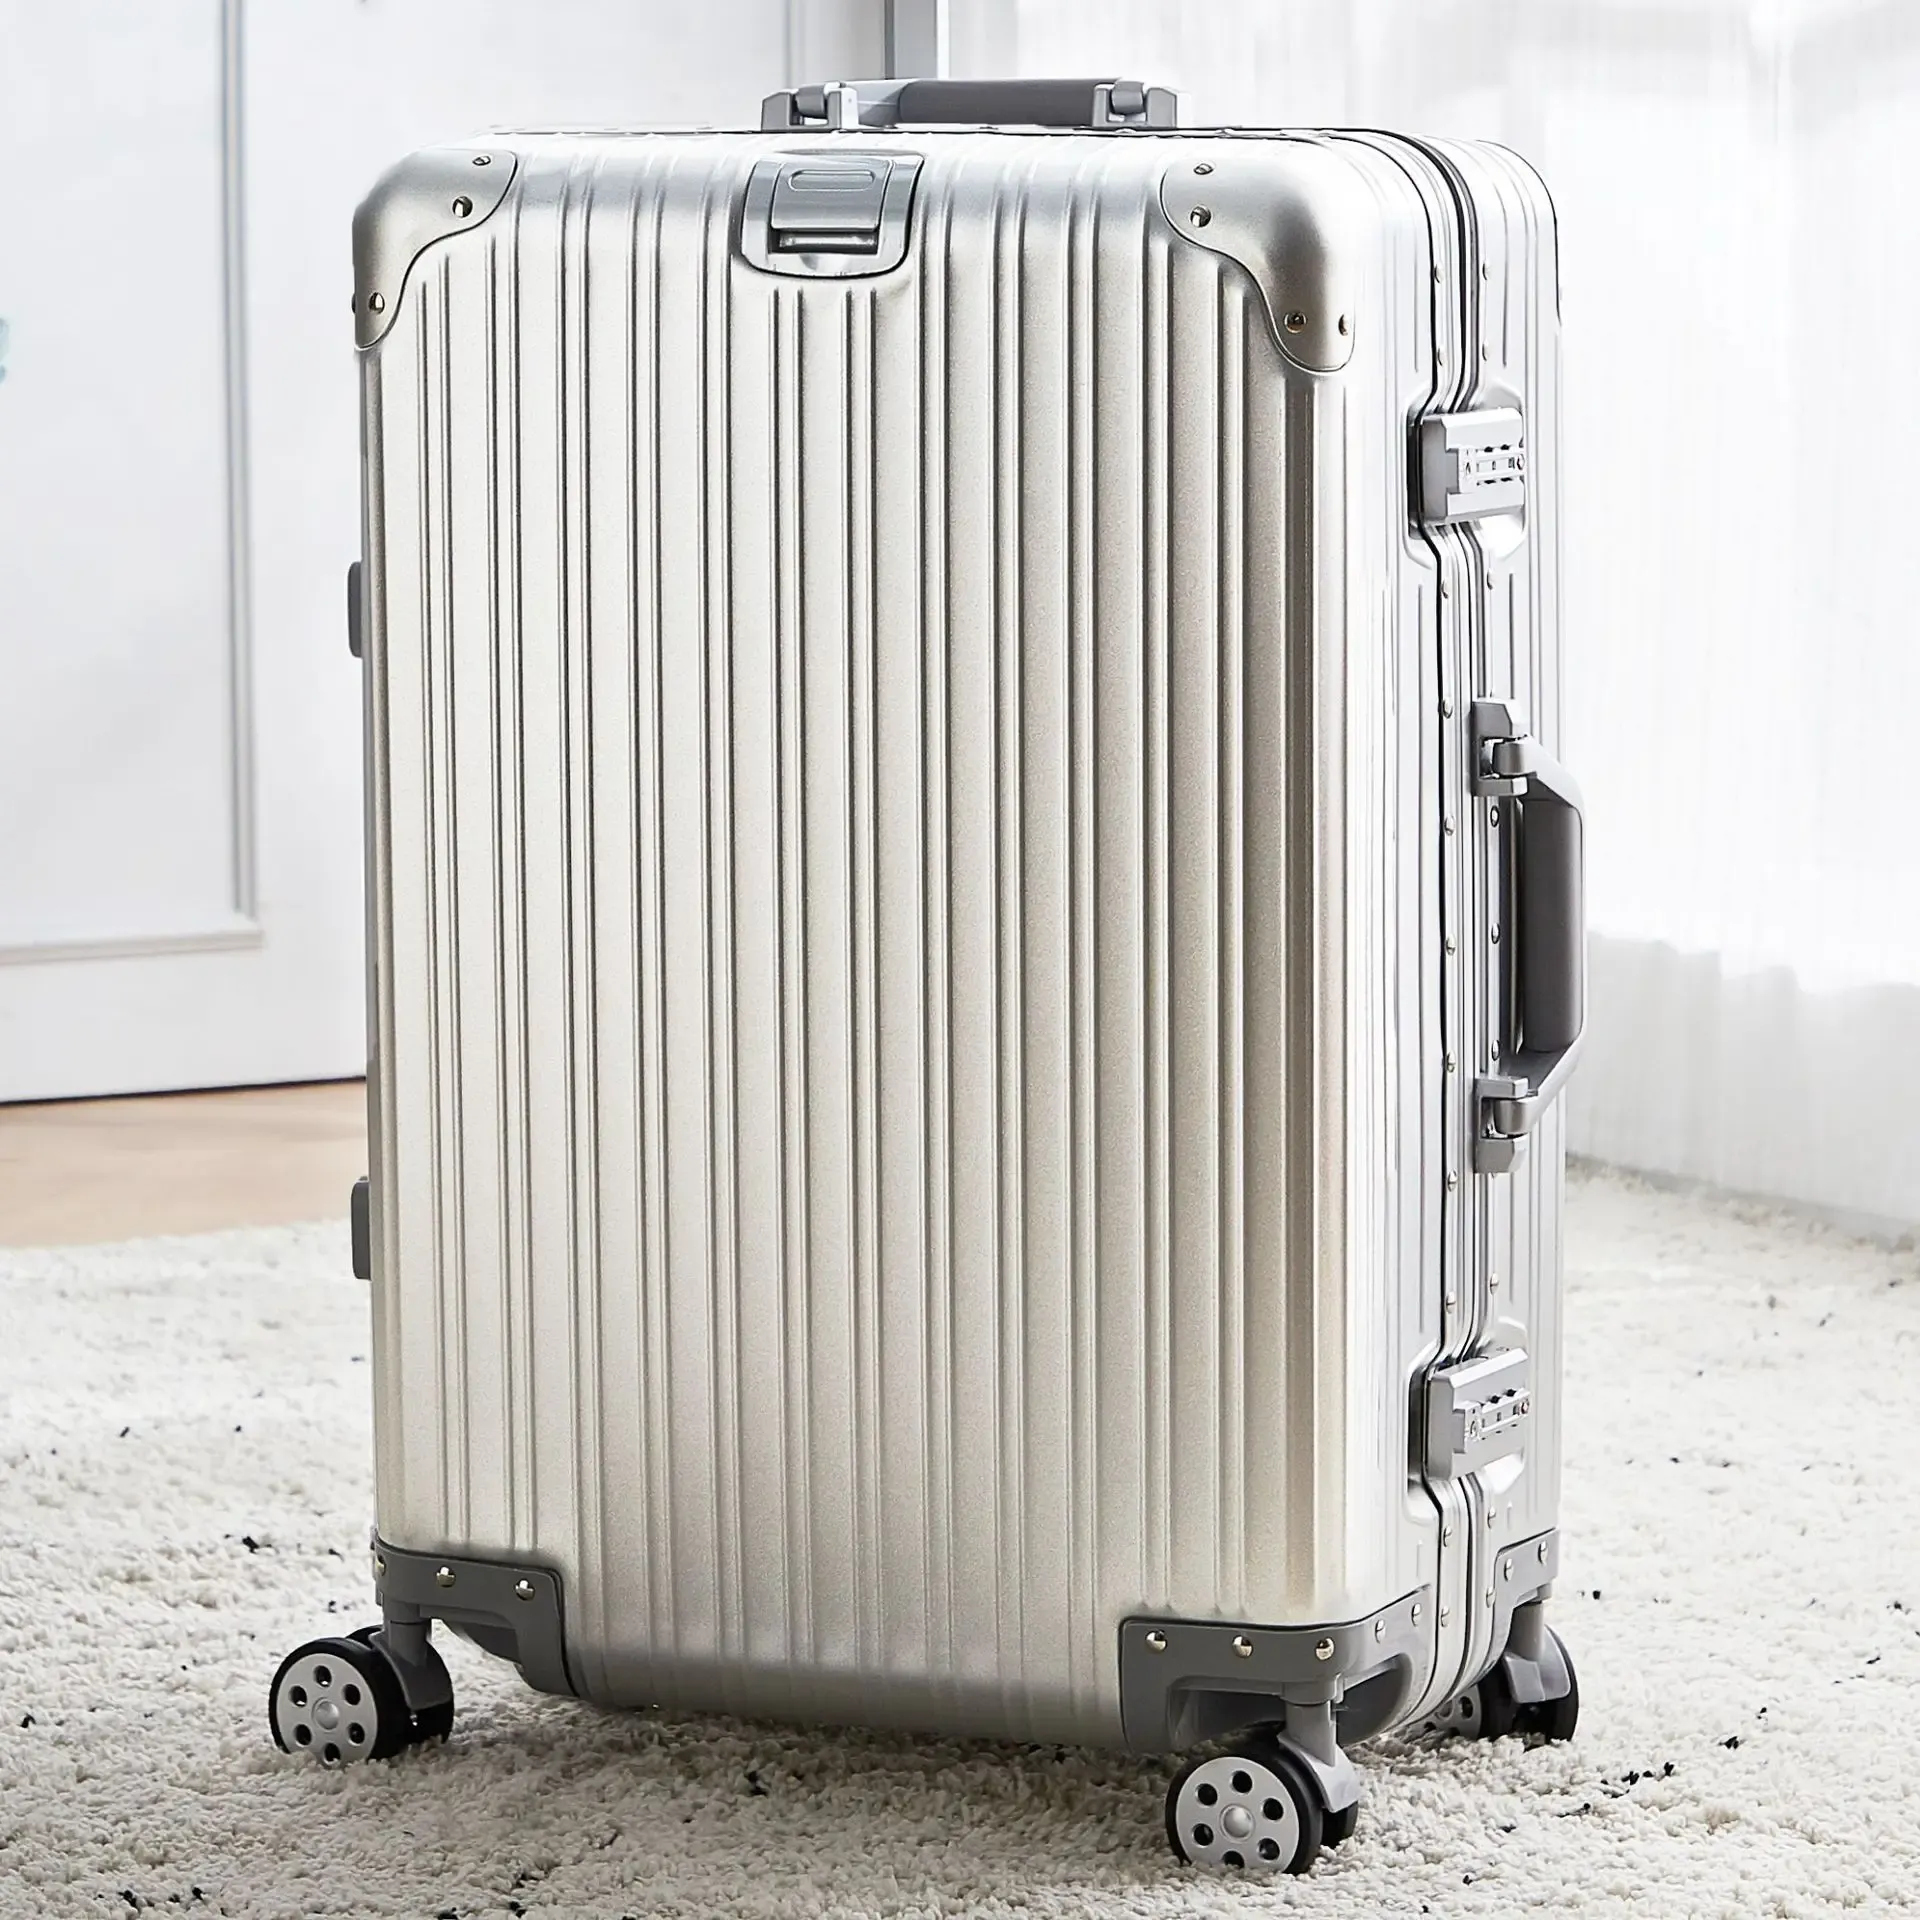 Carry-ons aluminium resebagage med spinnelhjul TSA-lås 20 tum ombordstigning bagage resväska stor storlek familjens resväska